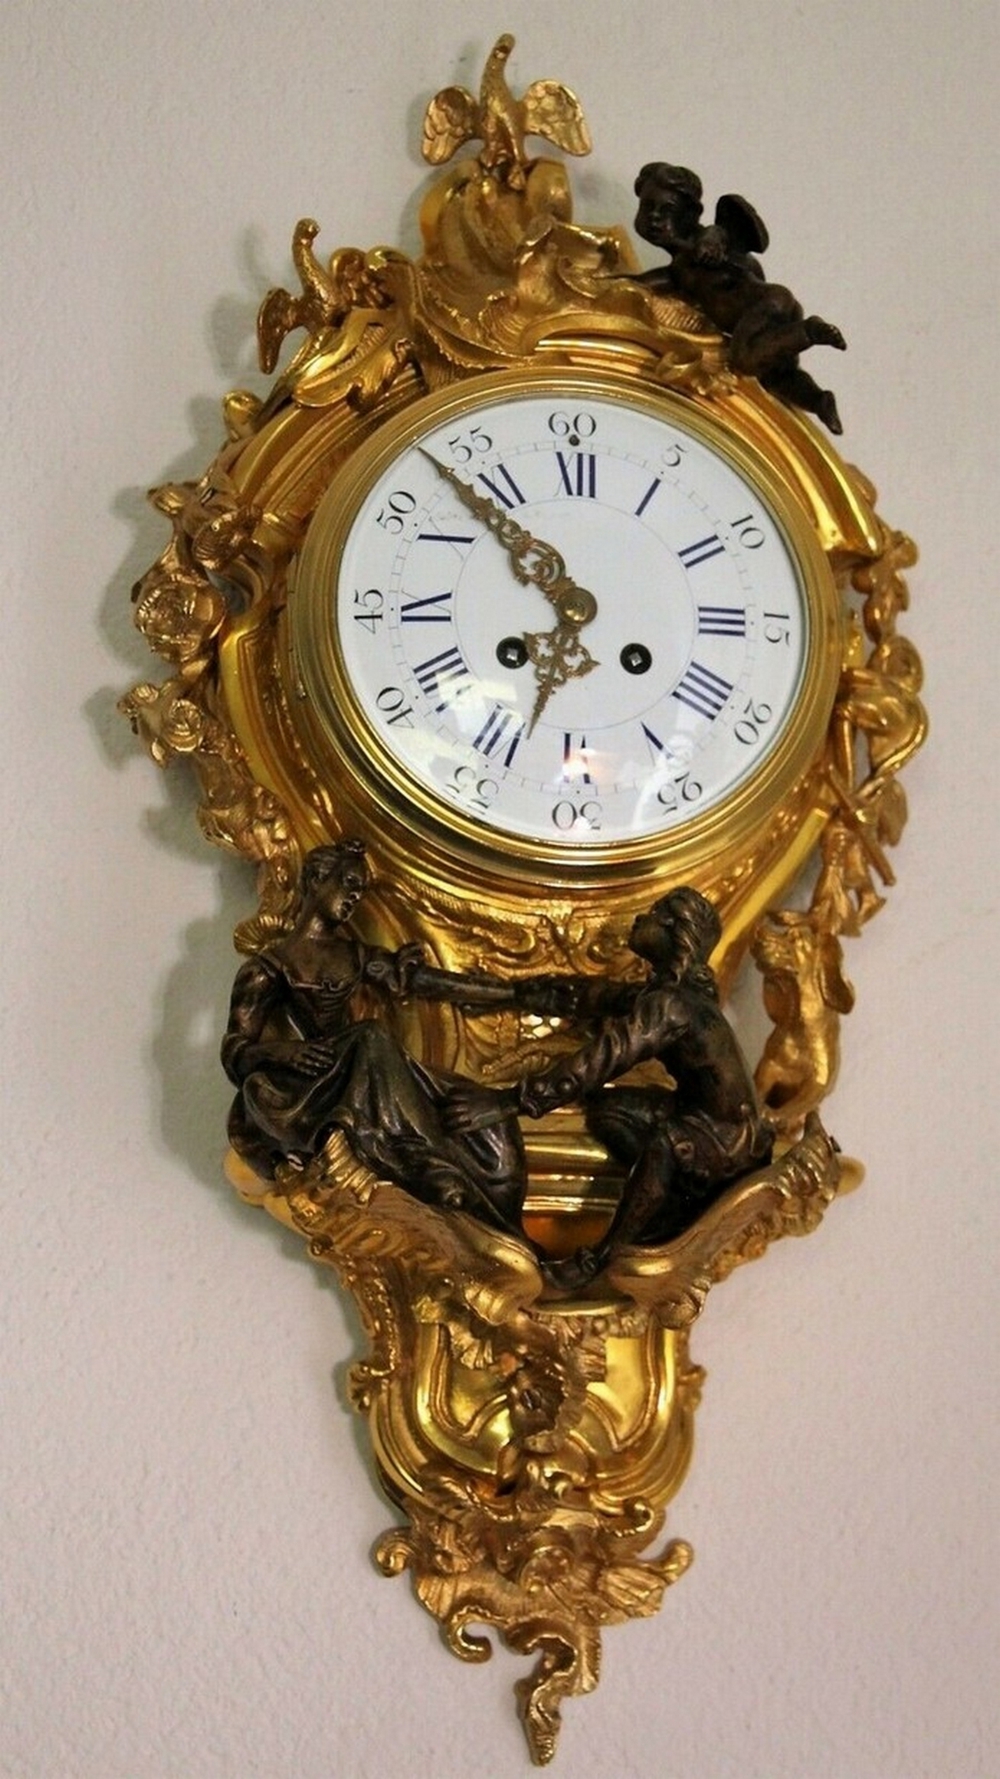 Seltene antike französische Carteluhr Wanduhr Cartel Uhr Bronze 1870